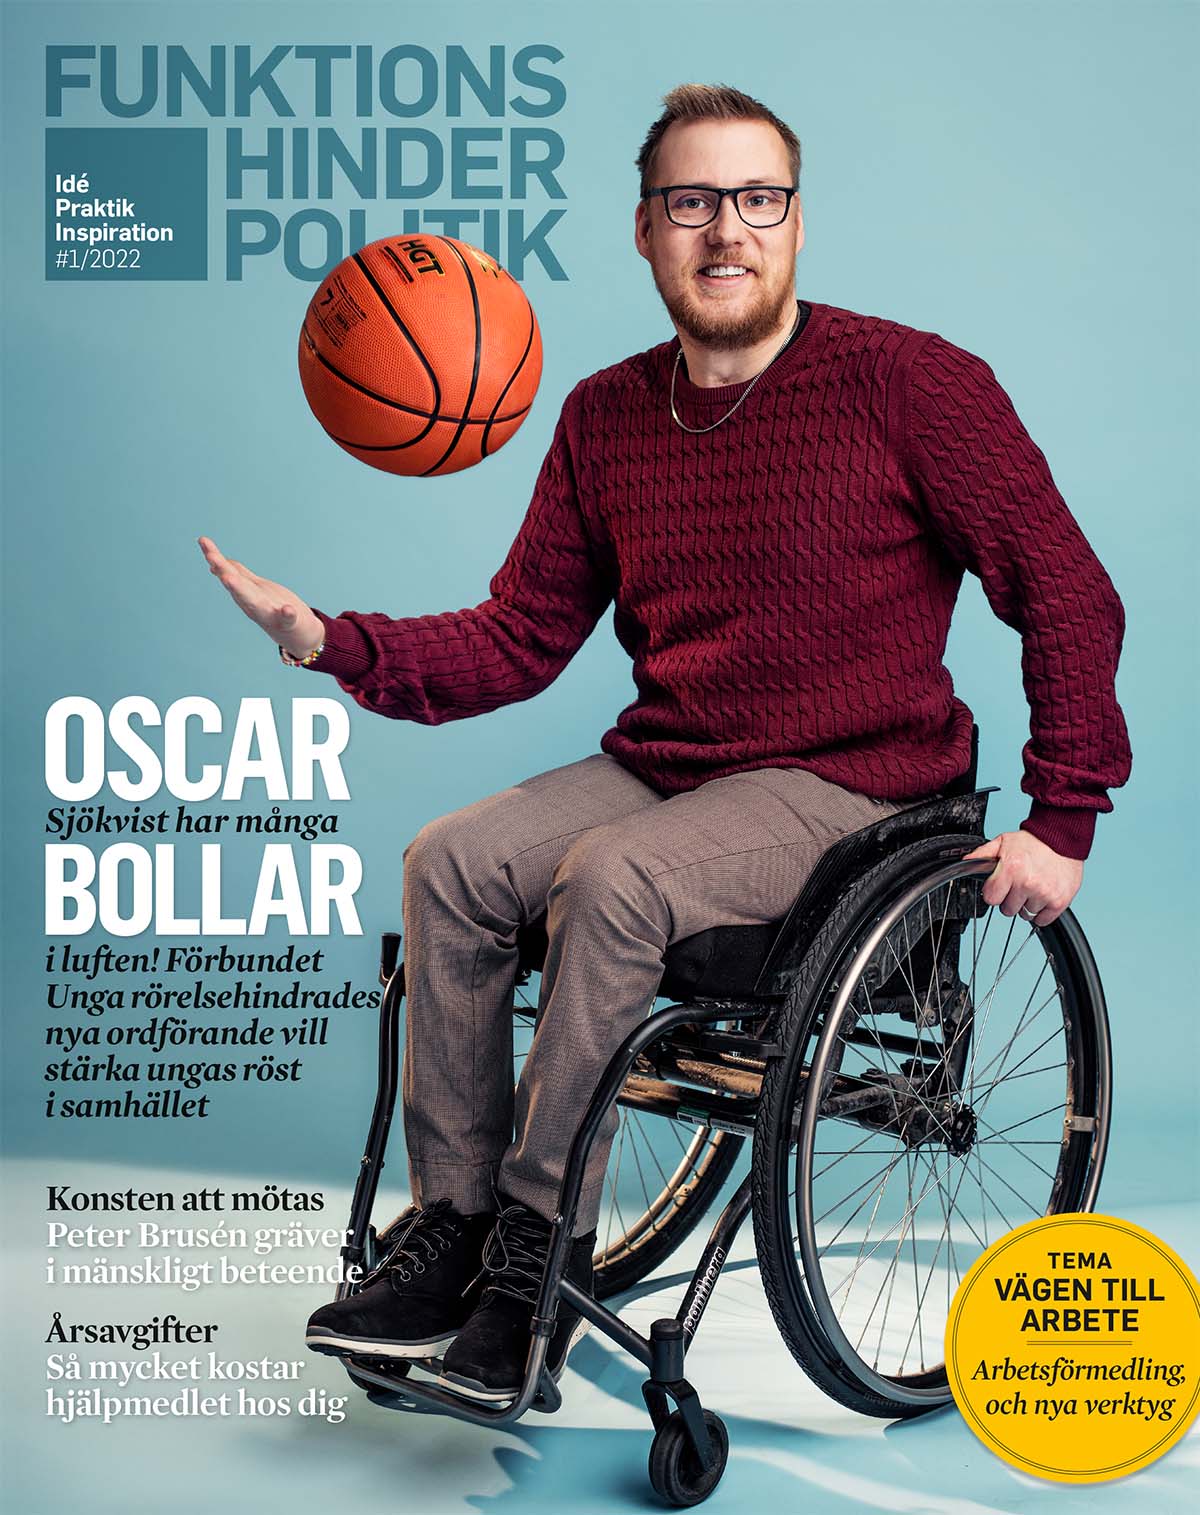 Omslaget till Funktionshinderpolitik 1-22. En man sitter i en rullstoloch bollar med en basketboll. Bakgrunden är turkos.